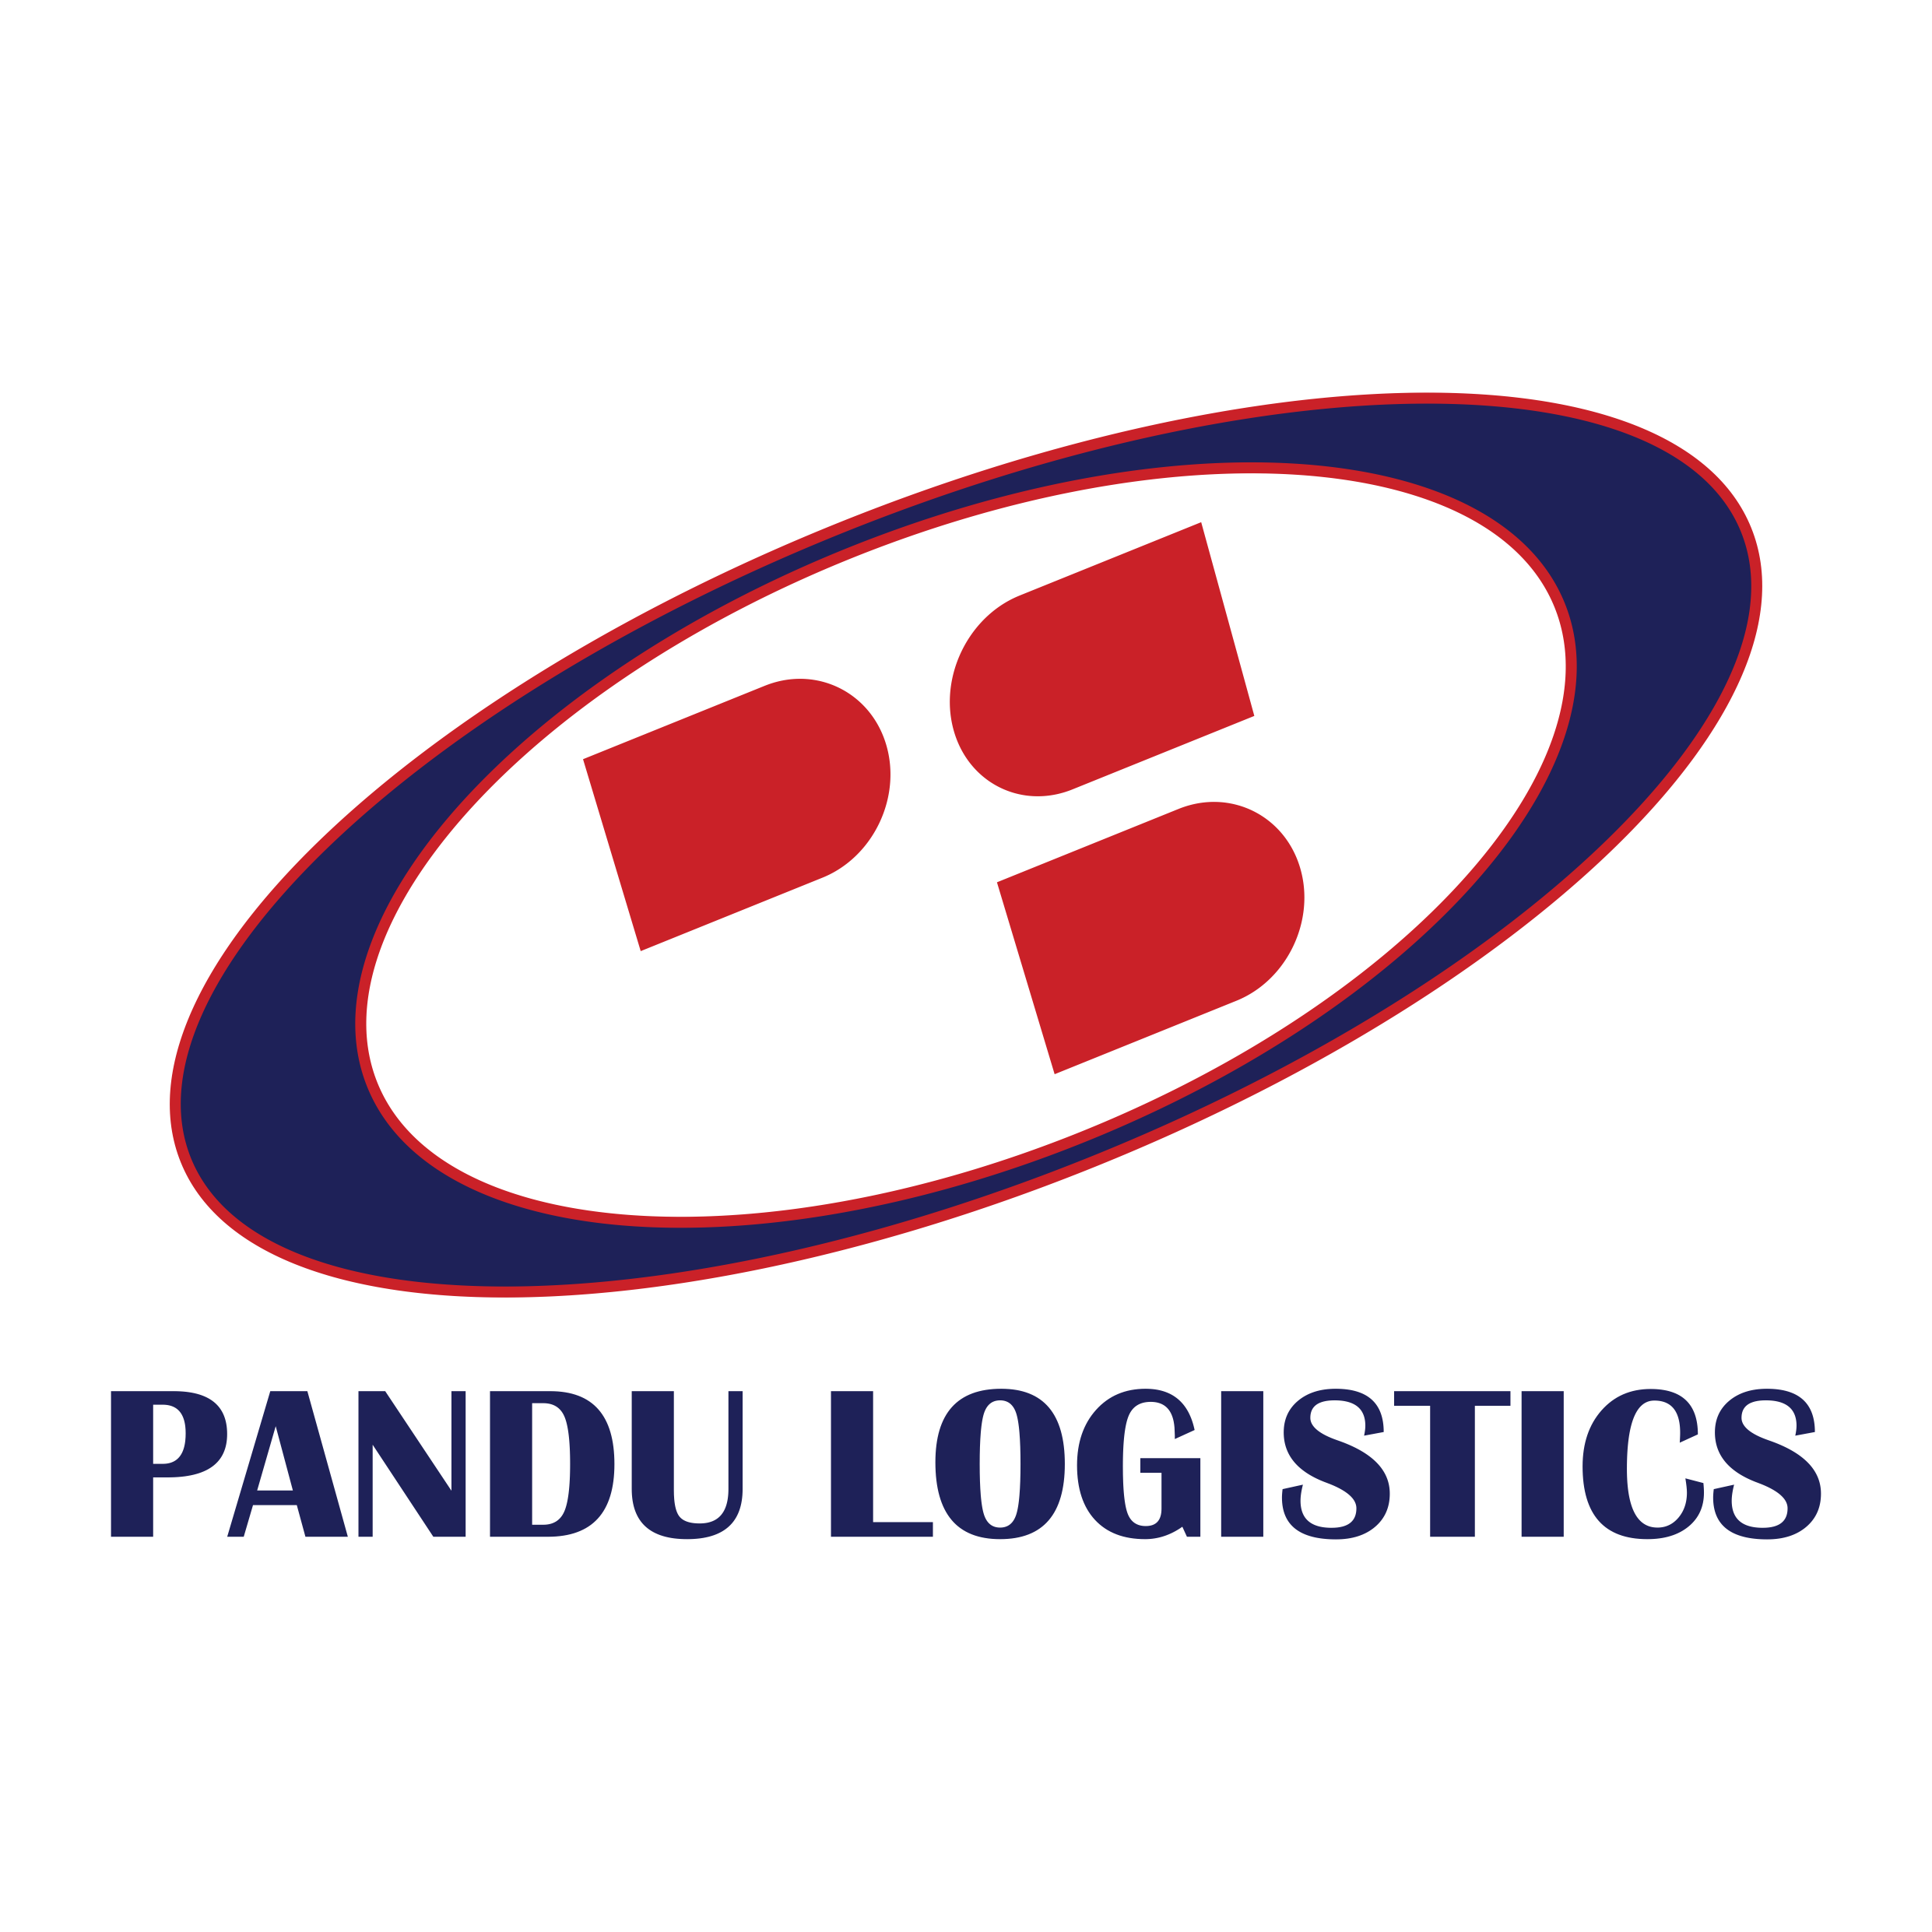 pandu-logistics.png